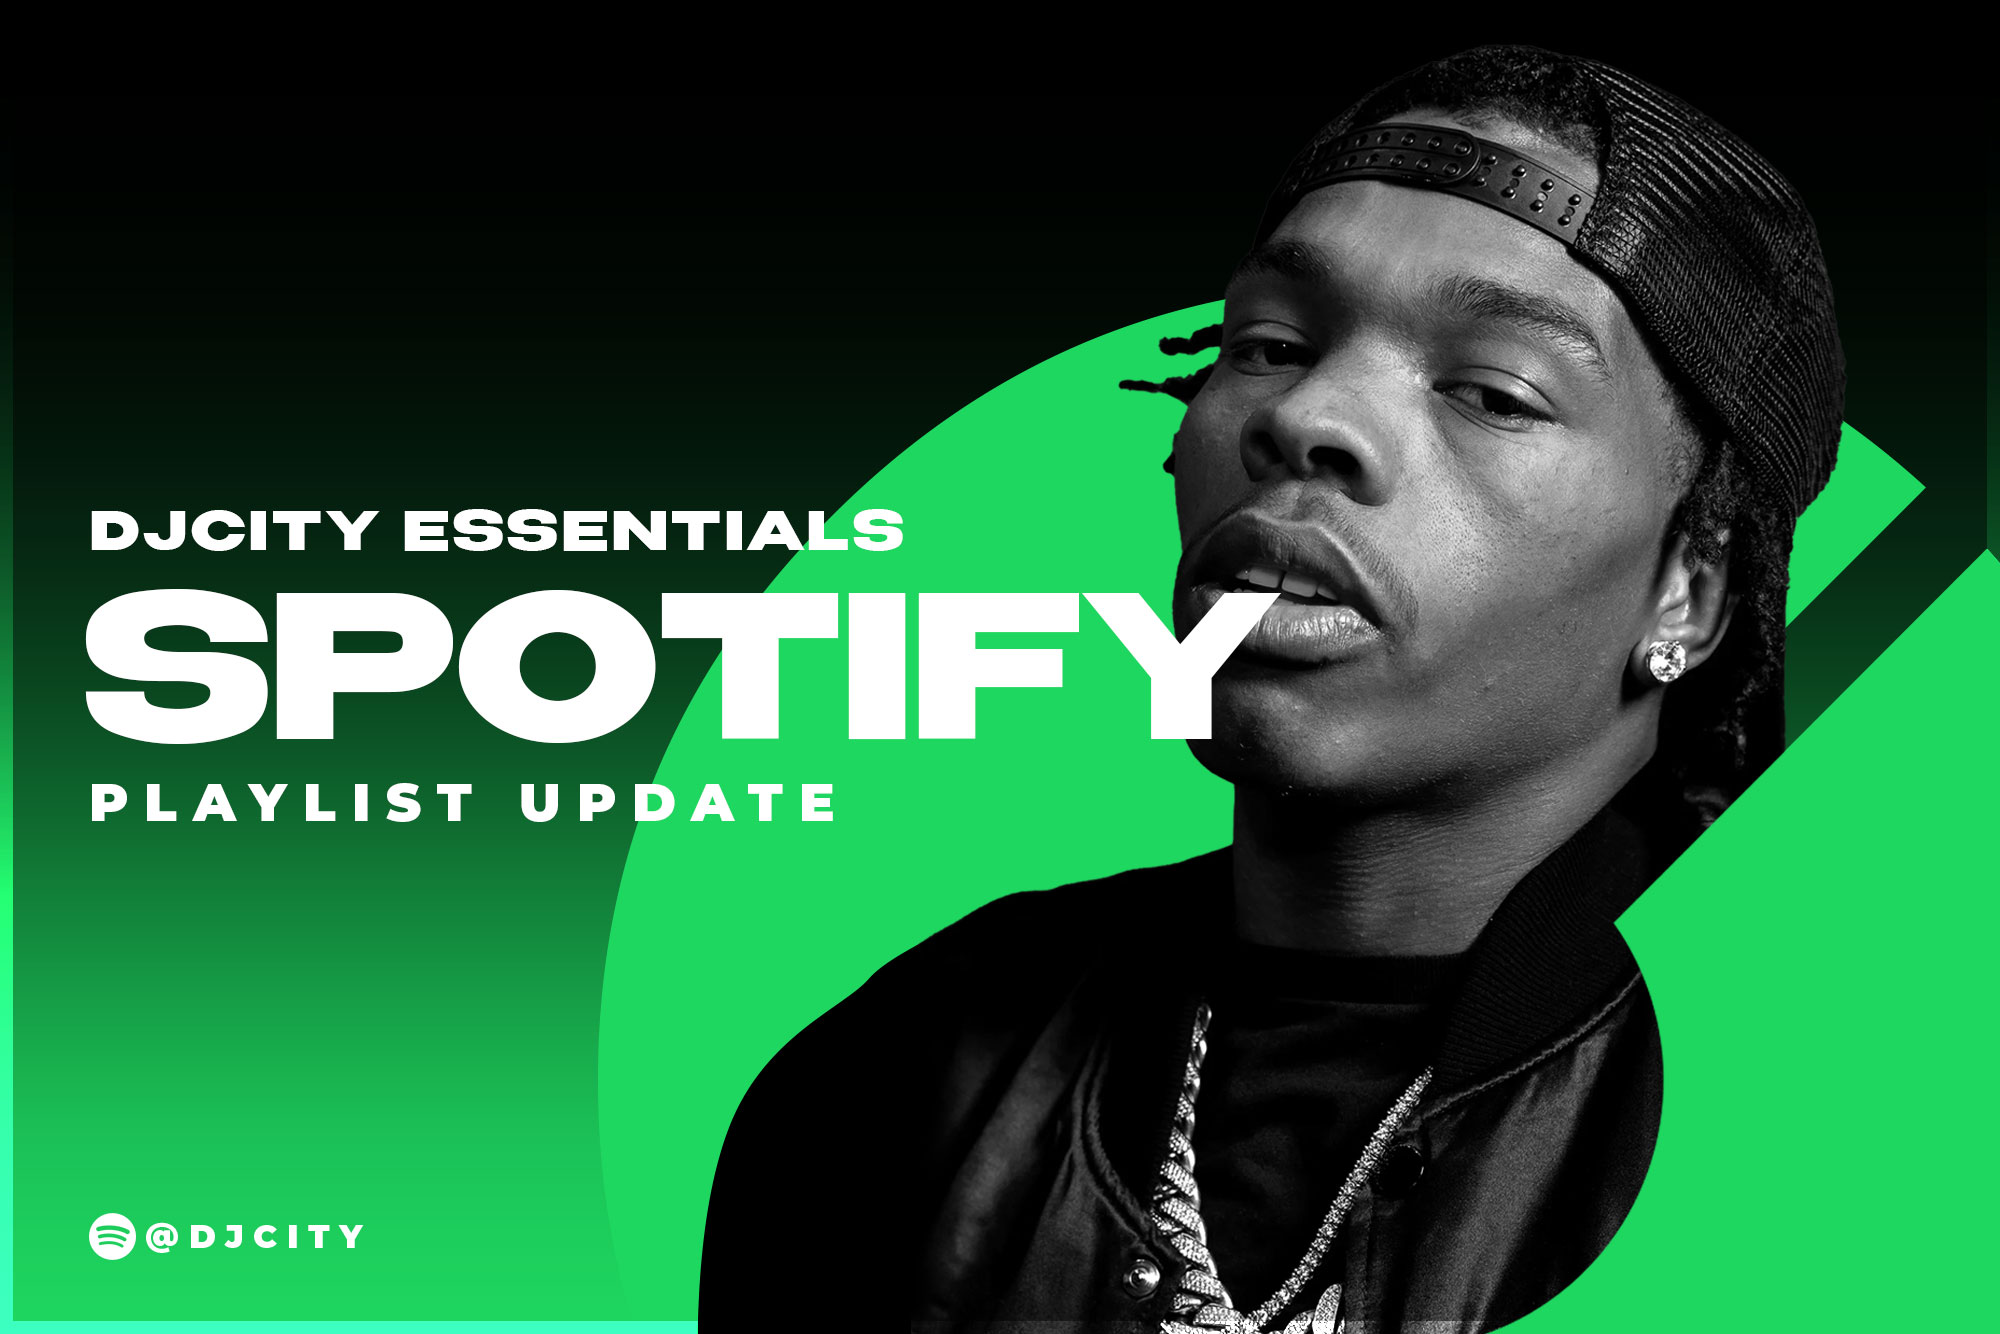 DJcity’s Spotify Playlist Update: Dec. 8